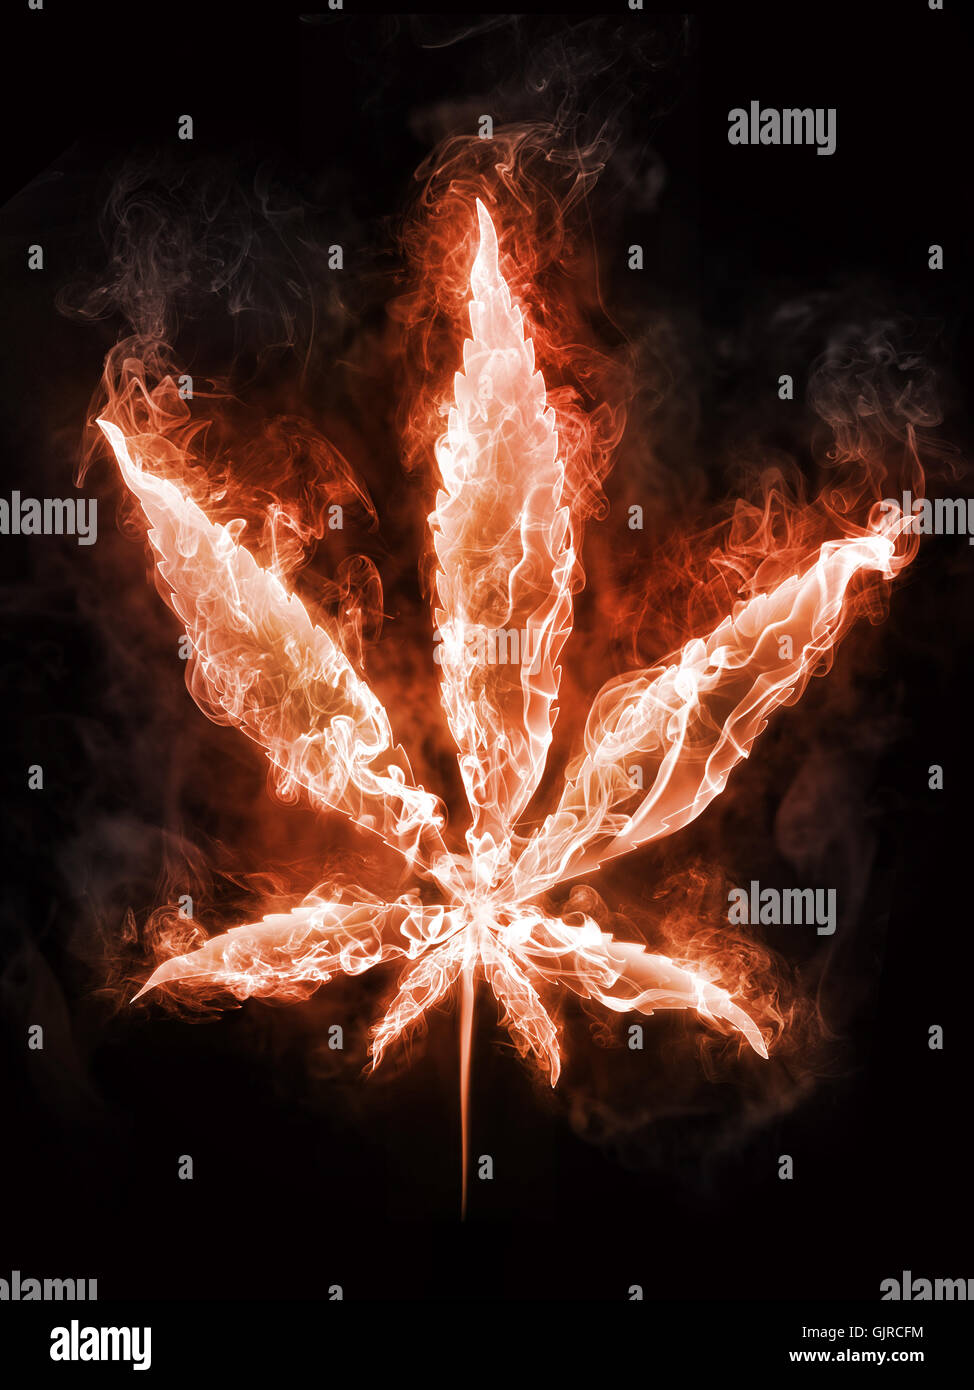 La marijuana dans Fire Banque D'Images